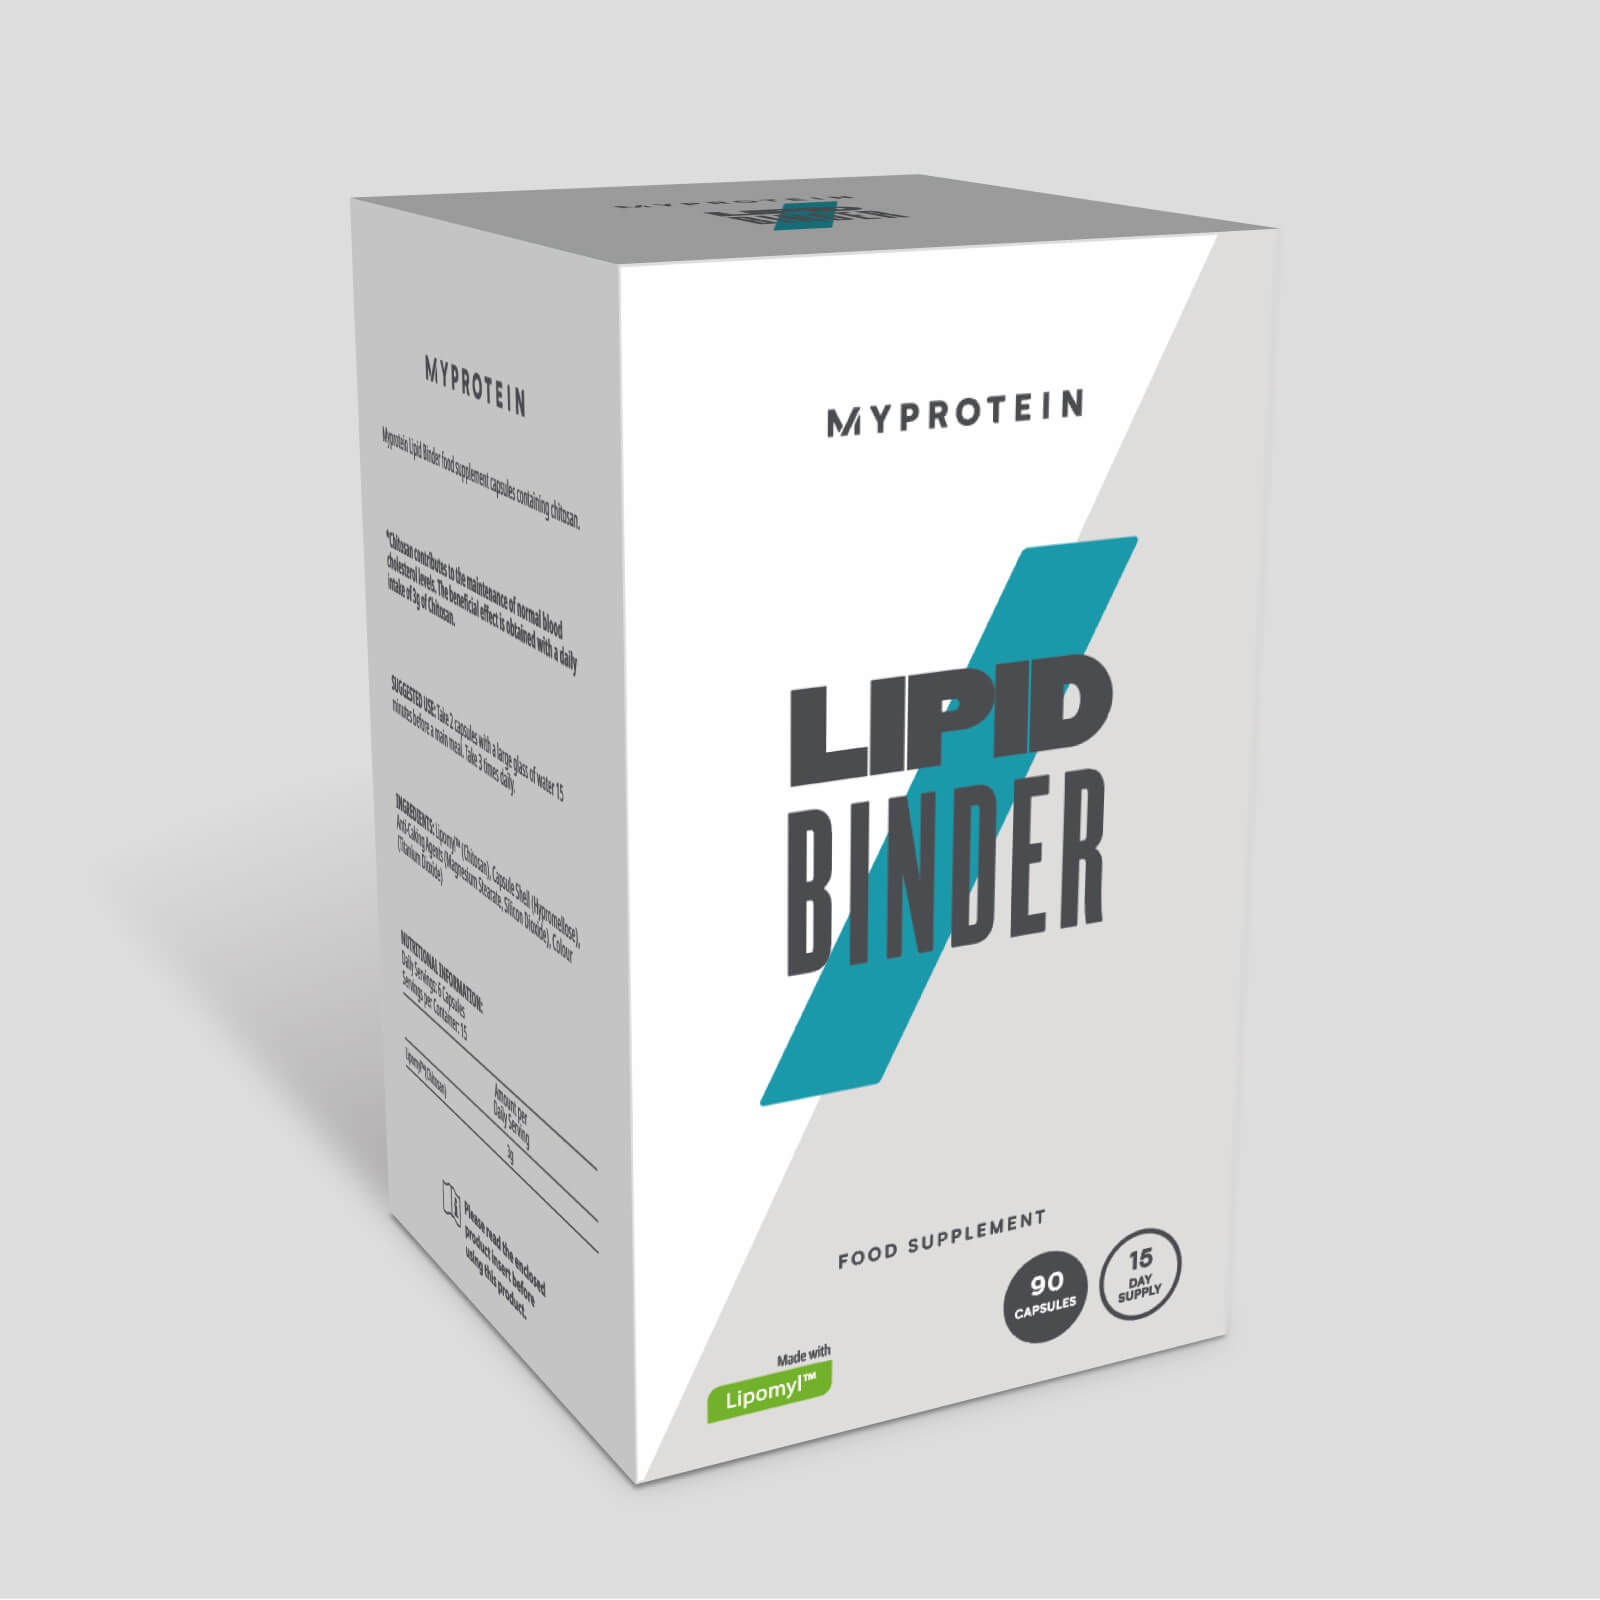 Myprotein Lipid Binder tablety - 30Tablety - Box